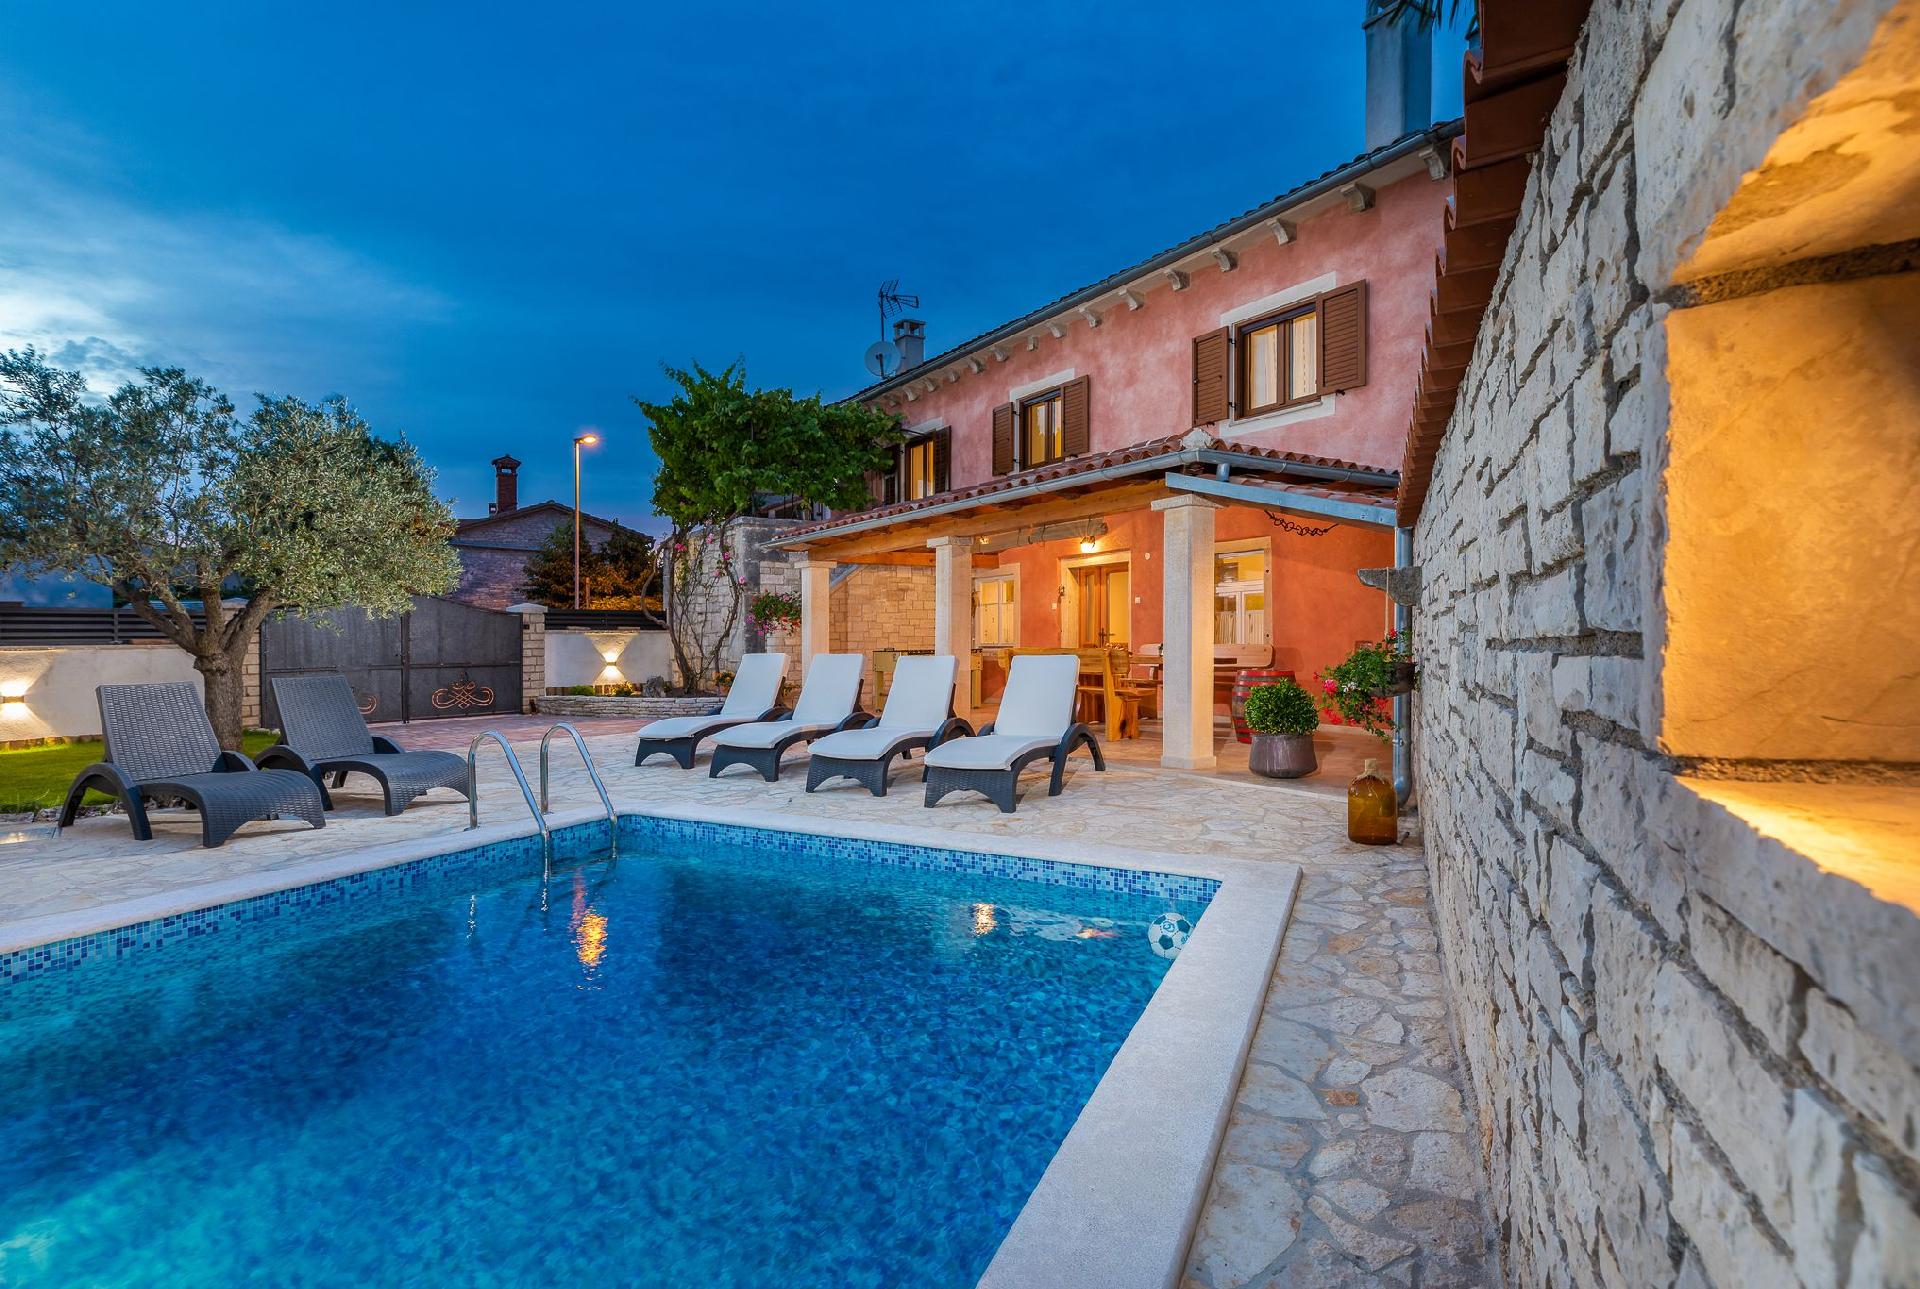 Casa Bepi - Ferienhaus mit Pool in ruhiger Lage in Ferienhaus in Istrien